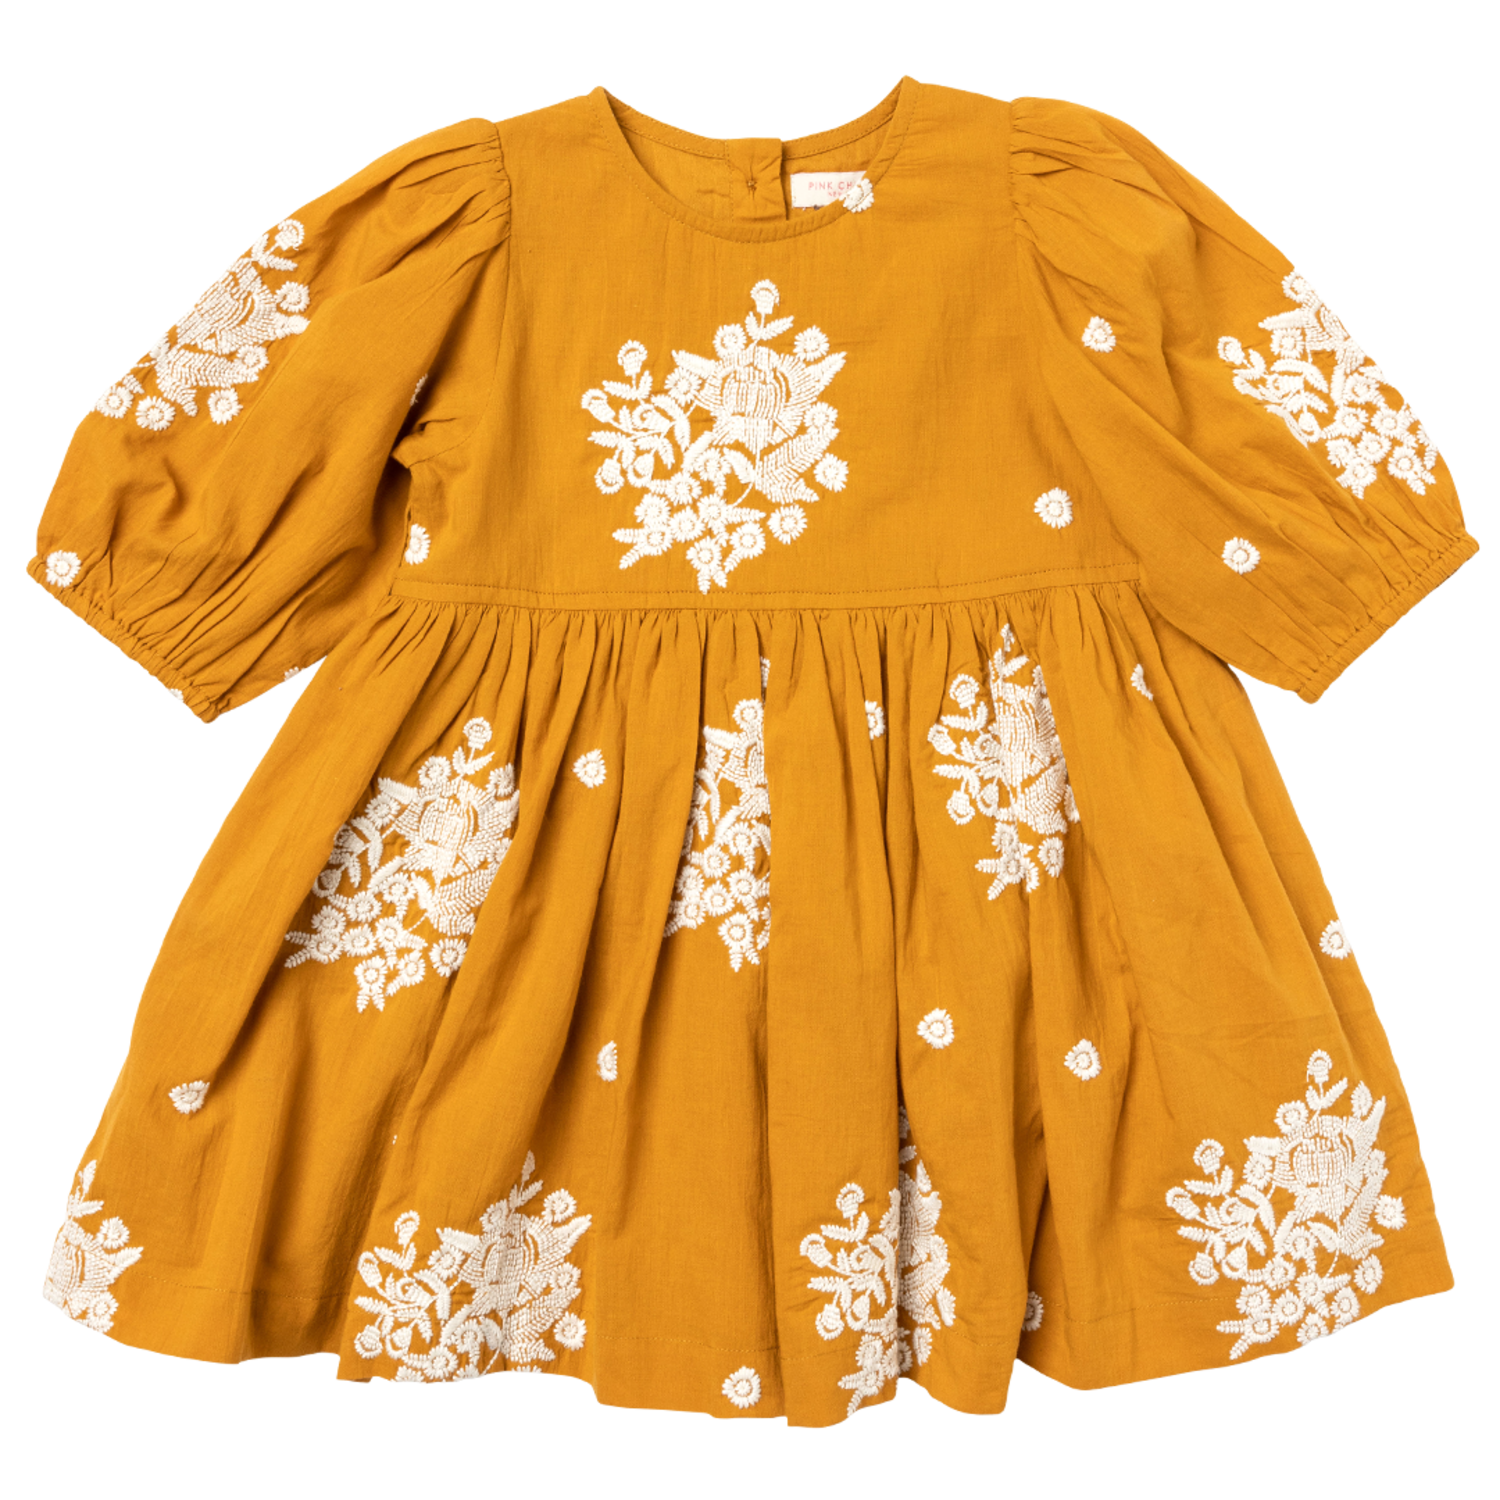 chicken Kari dress design stitched| stitched cotton fabric collection|  fancy chicken work shirts | Instagram